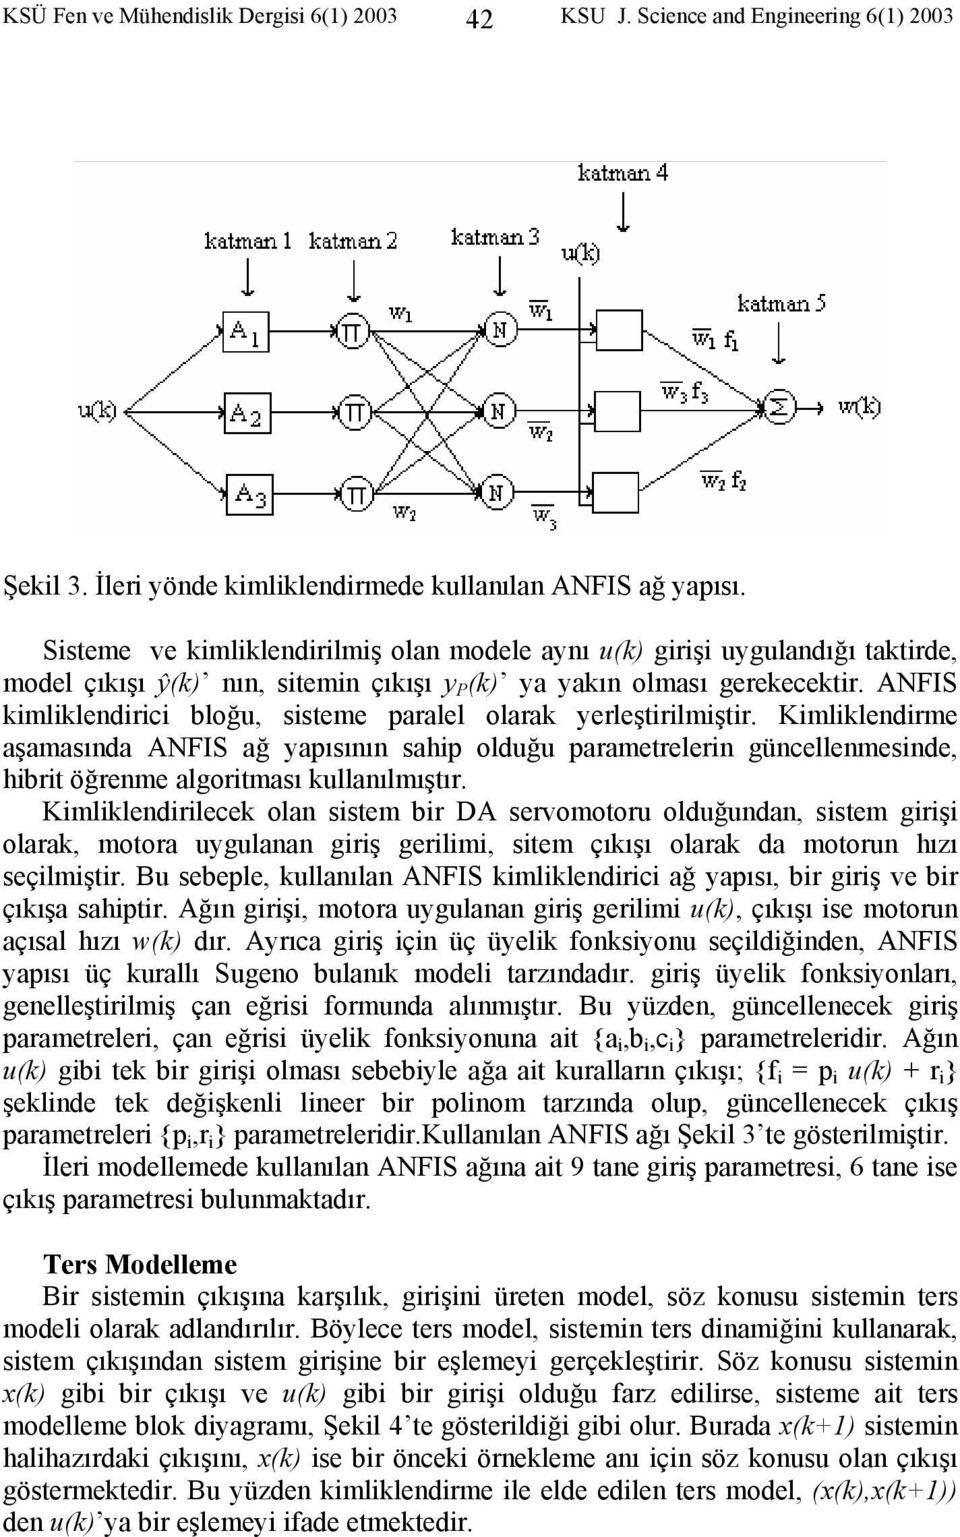 ANFIS kmlklendrc bloğu, ssteme paralel olarak yerleştrlmştr. Kmlklendrme aşamasında ANFIS ağ yapısının sahp olduğu parametrelern güncellenmesnde, hbrt öğrenme algortması kullanılmıştır.